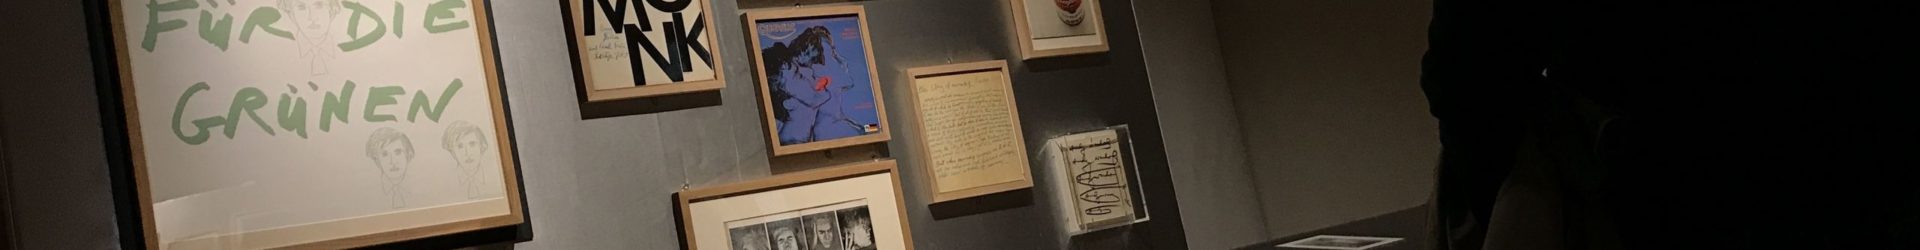 Andy Warhol s’affiche au Musée de l’Imprimerie et de la Communication Graphique